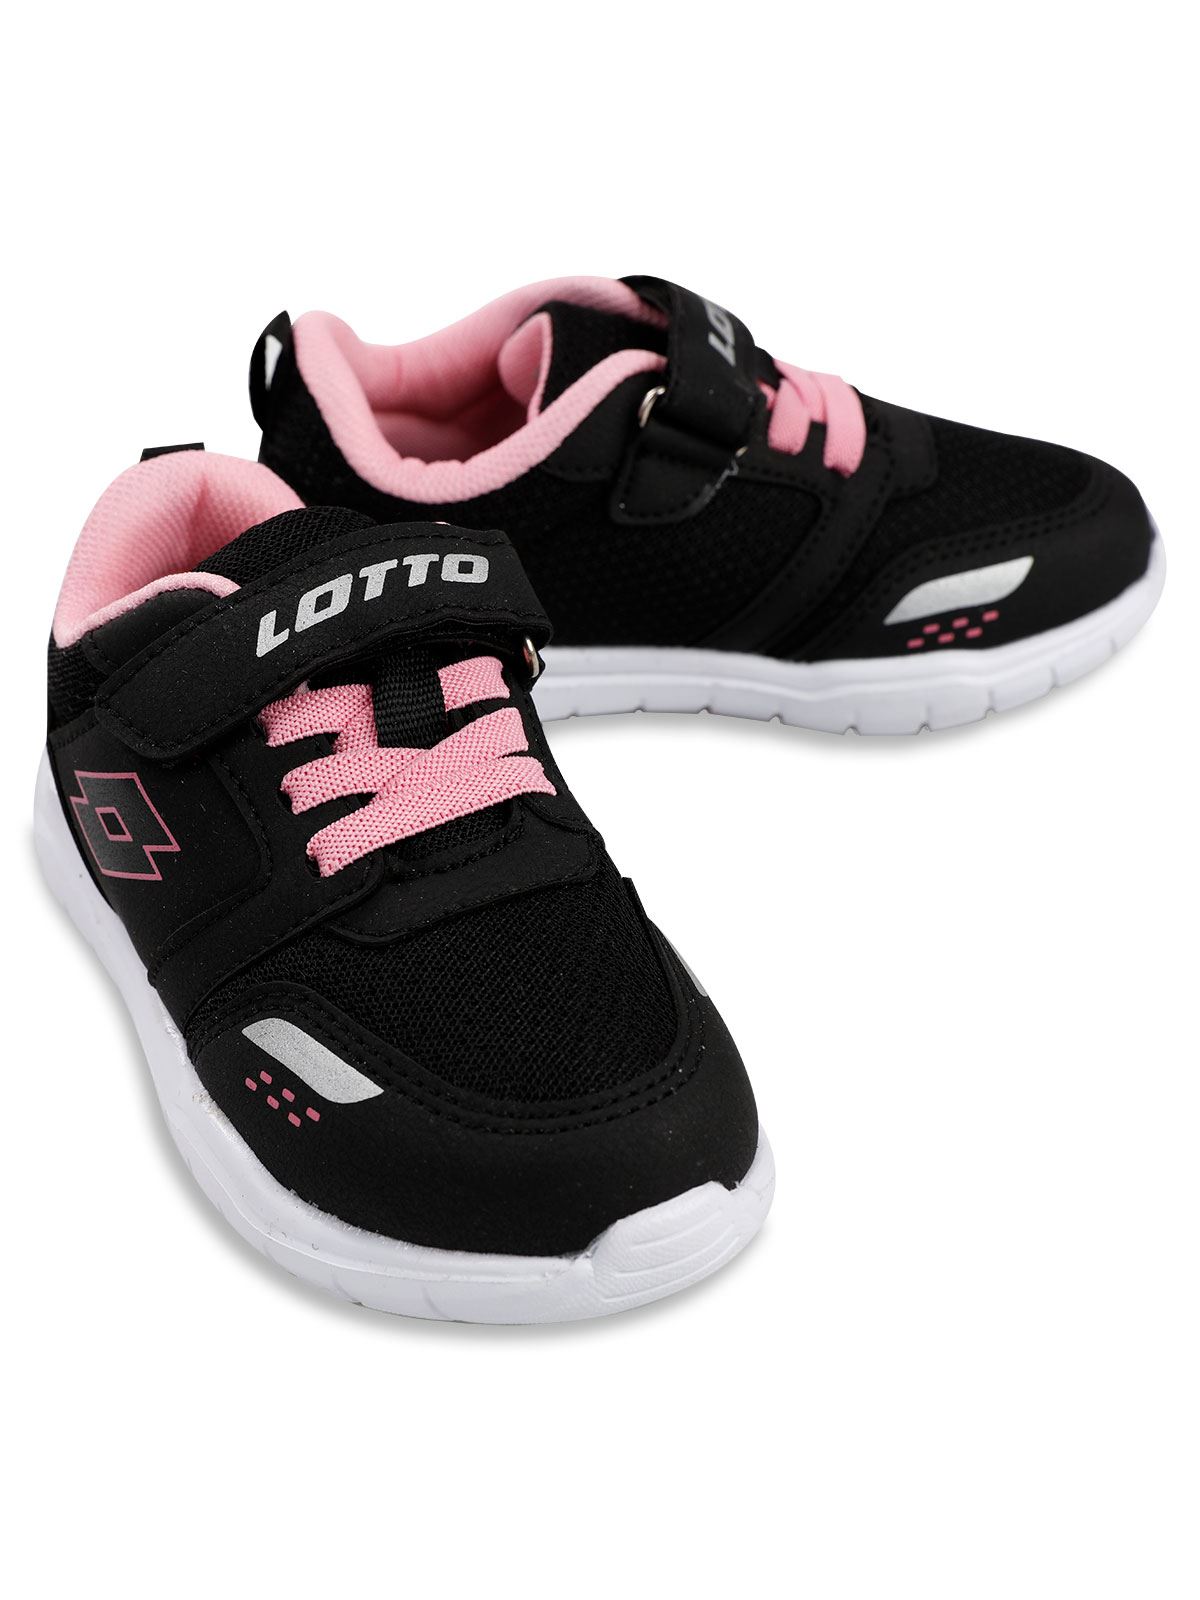 Lotto Kız Çocuk Spor Ayakkabı 26-30 Numara Siyah